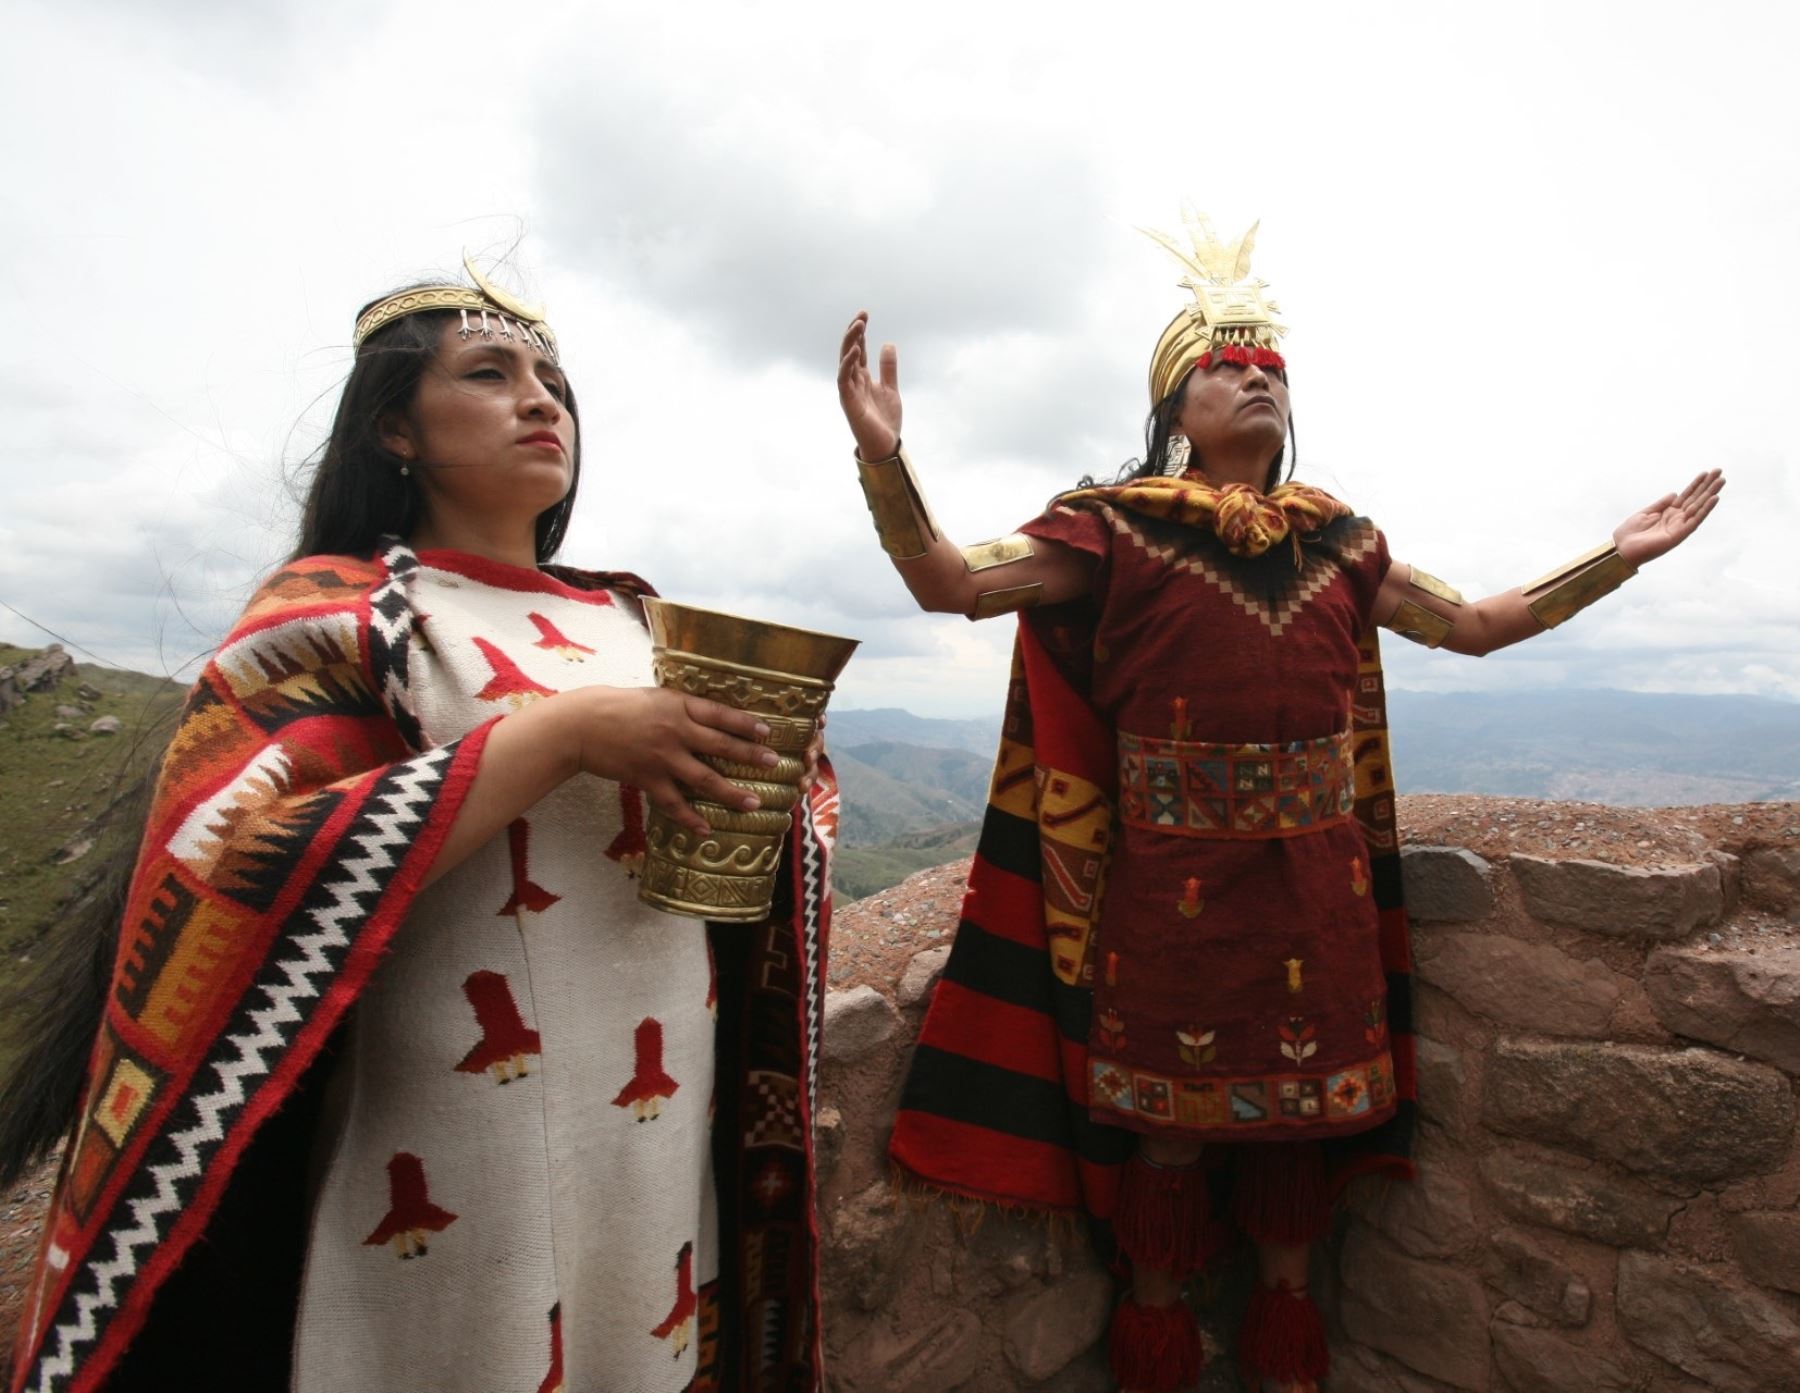 Actores cusqueños escenificarán este sábado 17 de junio la fundación de Cusco en el apu Huanacaure, la montaña sagrada de los incas. ANDINA/Percy Hurtado Santillán